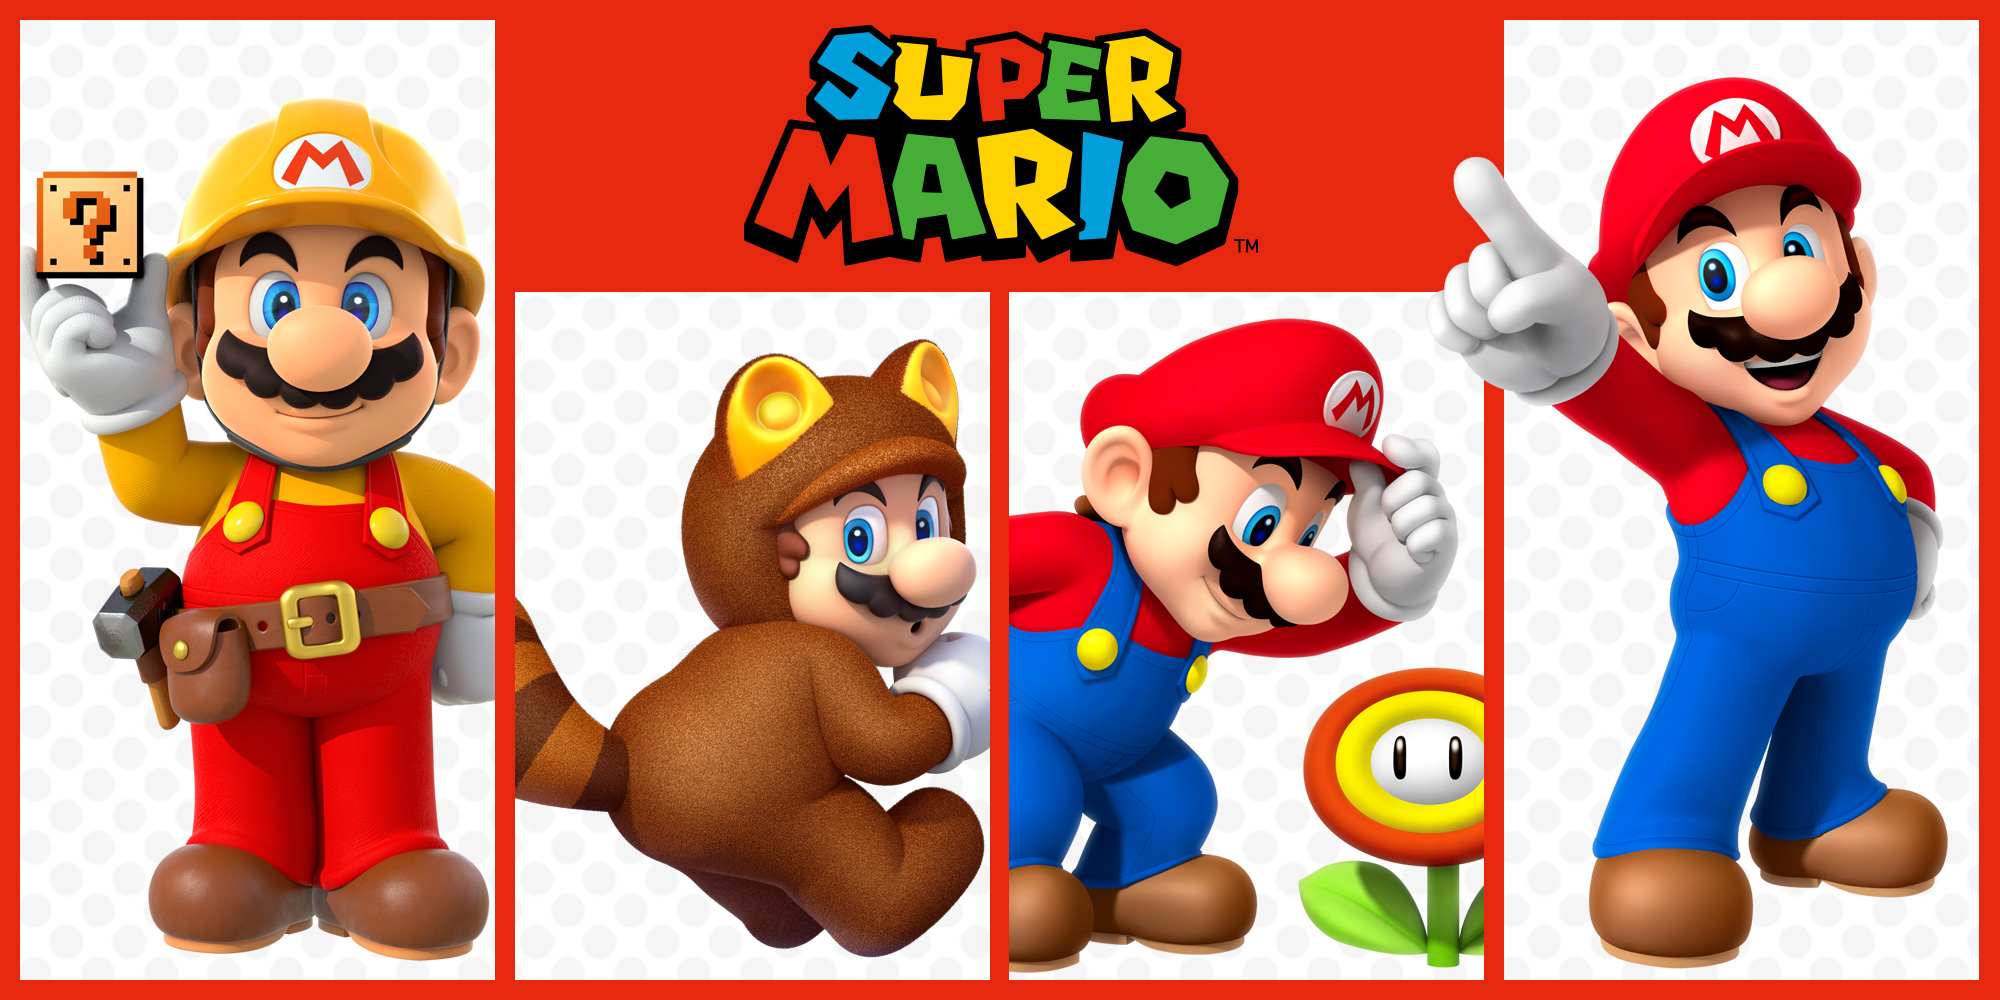 ¿Quieres más Super Mario? ¡Estos juegos de plataformas son lo que estás buscando!